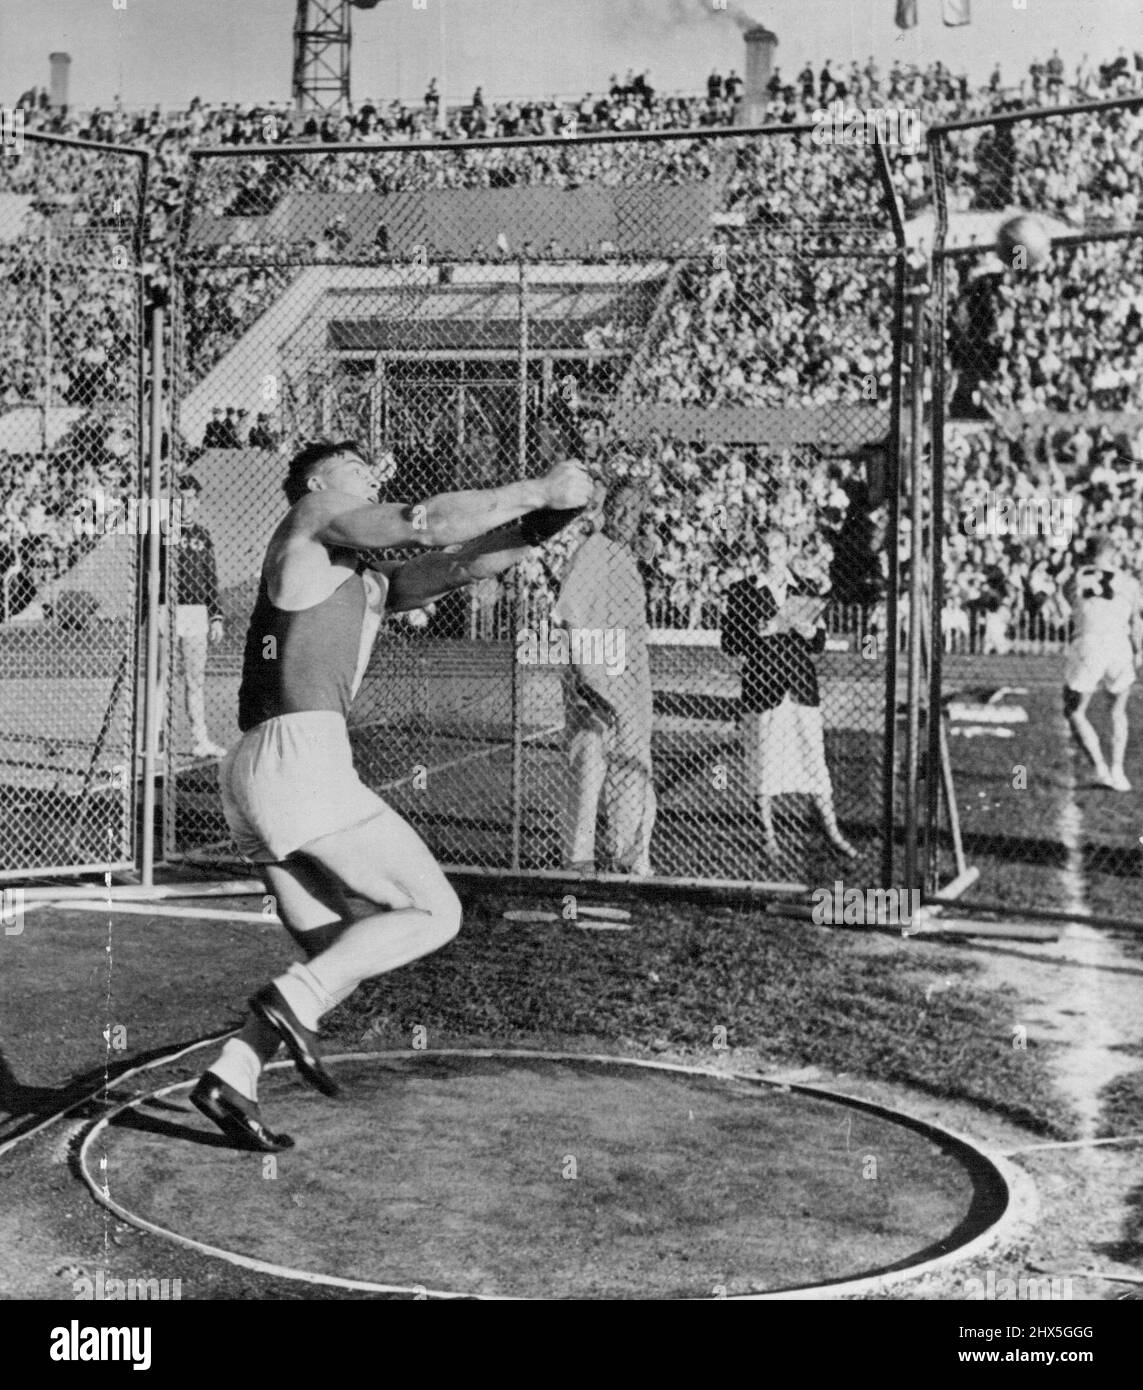 Sportivi sovietici: M. Krivonosov. Porta record mondiale, lanciando il  martello, con una distanza di 207 piedi 9¾ poll. Si prevede che competerà  nei Giochi Olimpici di Melbourne del 1956. Ottobre 14, 1955. (